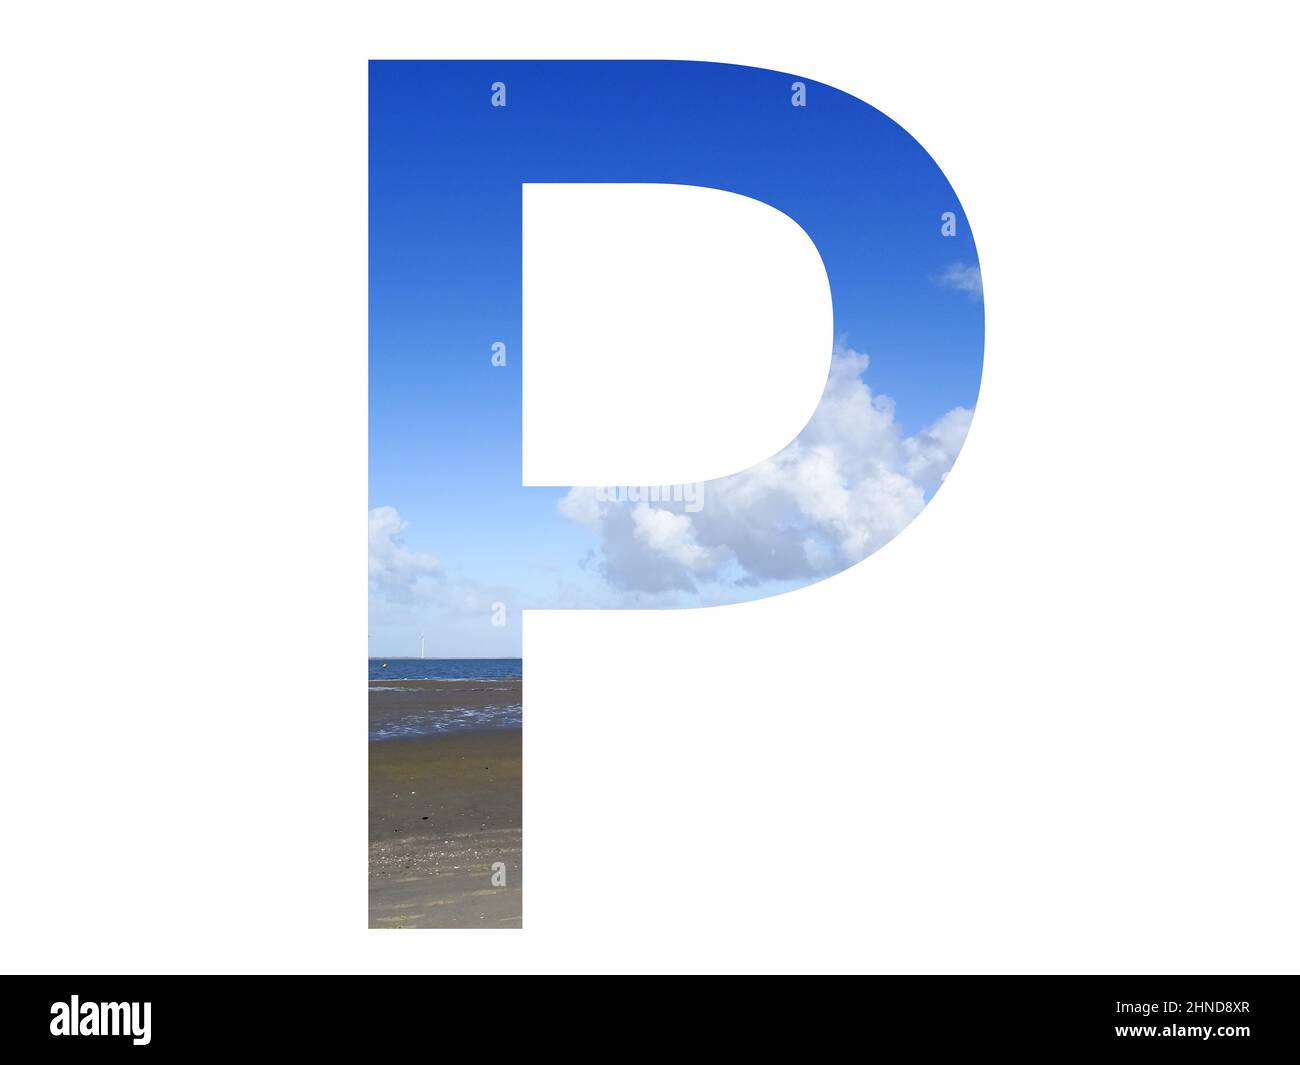 Lettre P de l'alphabet avec plage, mer et ciel bleu, mer du nord, pays-Bas, isolé sur fond blanc Banque D'Images